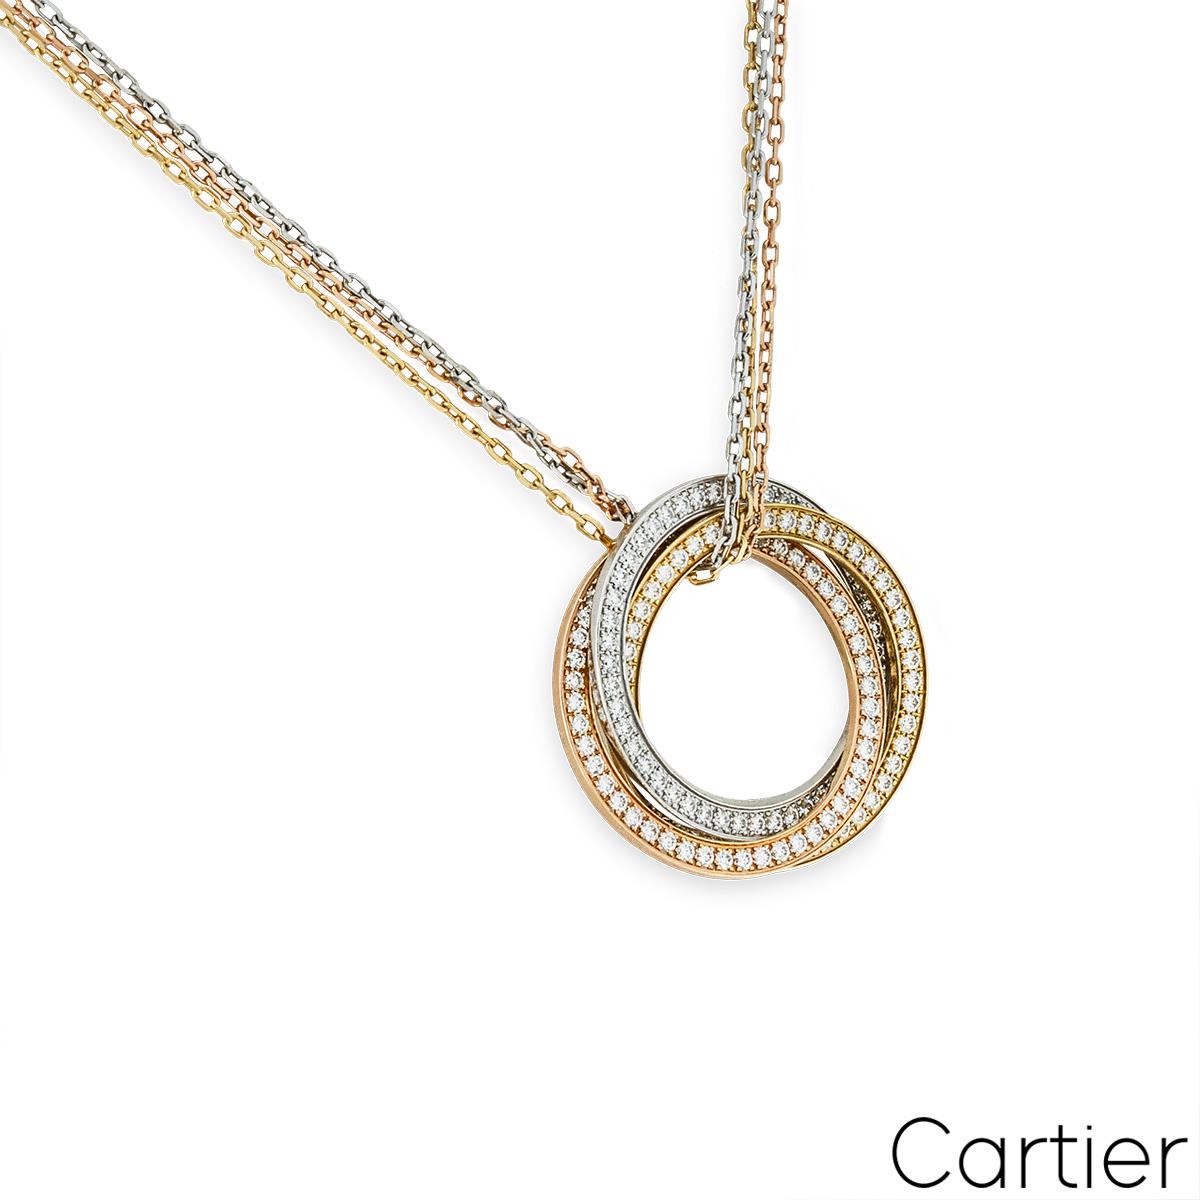 Ein verführerisches Collier aus dreifarbigem 18-karätigem Gold mit Diamanten von Cartier aus der Kollektion Trinity De Cartier. Das Collier besteht aus drei durchbrochenen, kreisförmigen Motiven in Gelb-, Weiß- und Roségold, die mit 144 runden